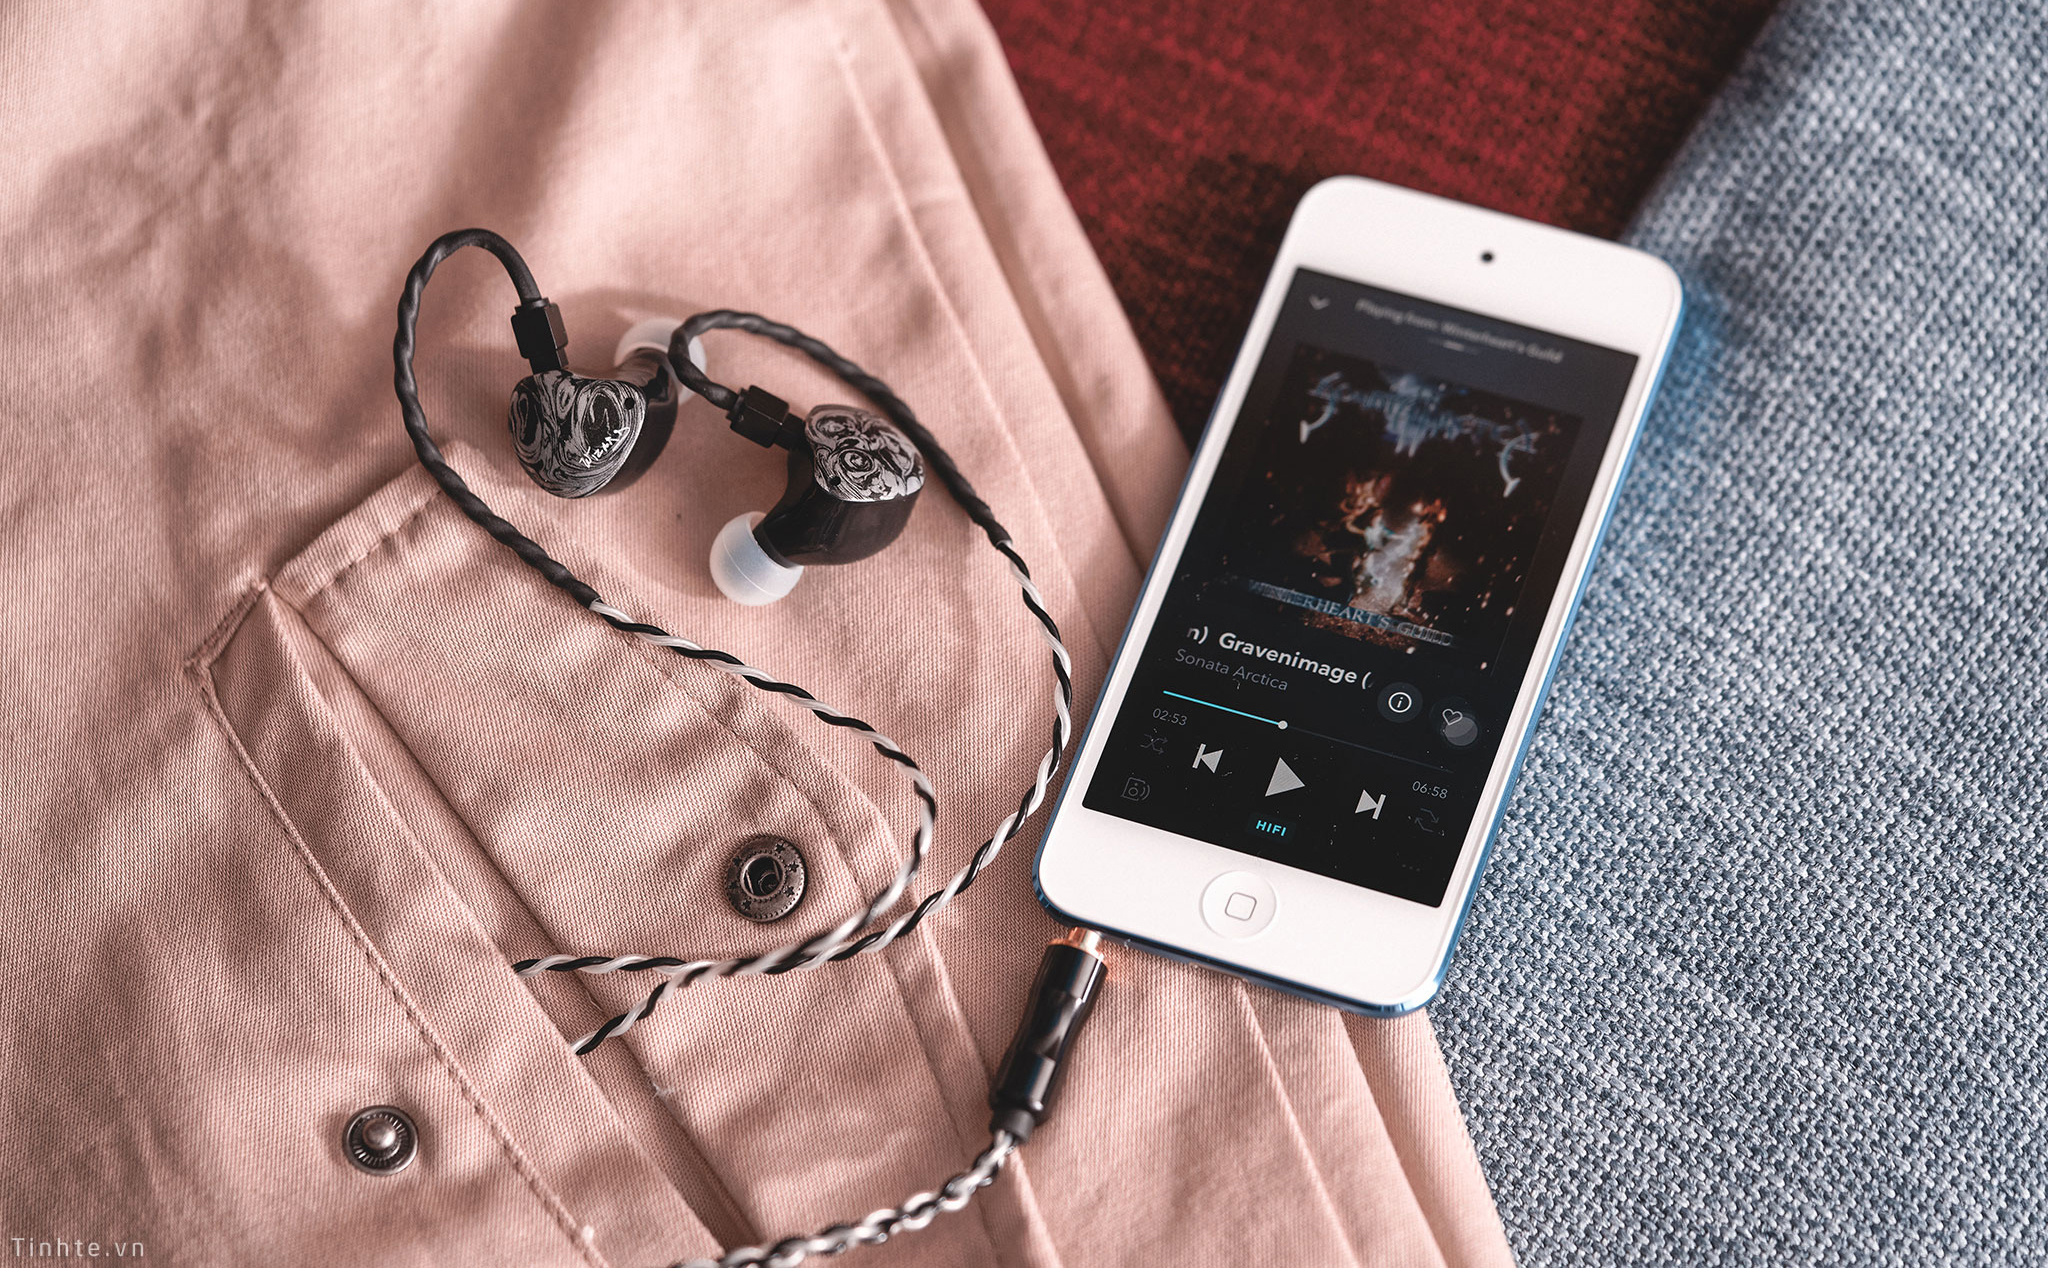 Trên tay iPod Touch gen 7 – phục vụ tốt nhu cầu nghe nhạc cơ bản trong thời đại số ngày nay